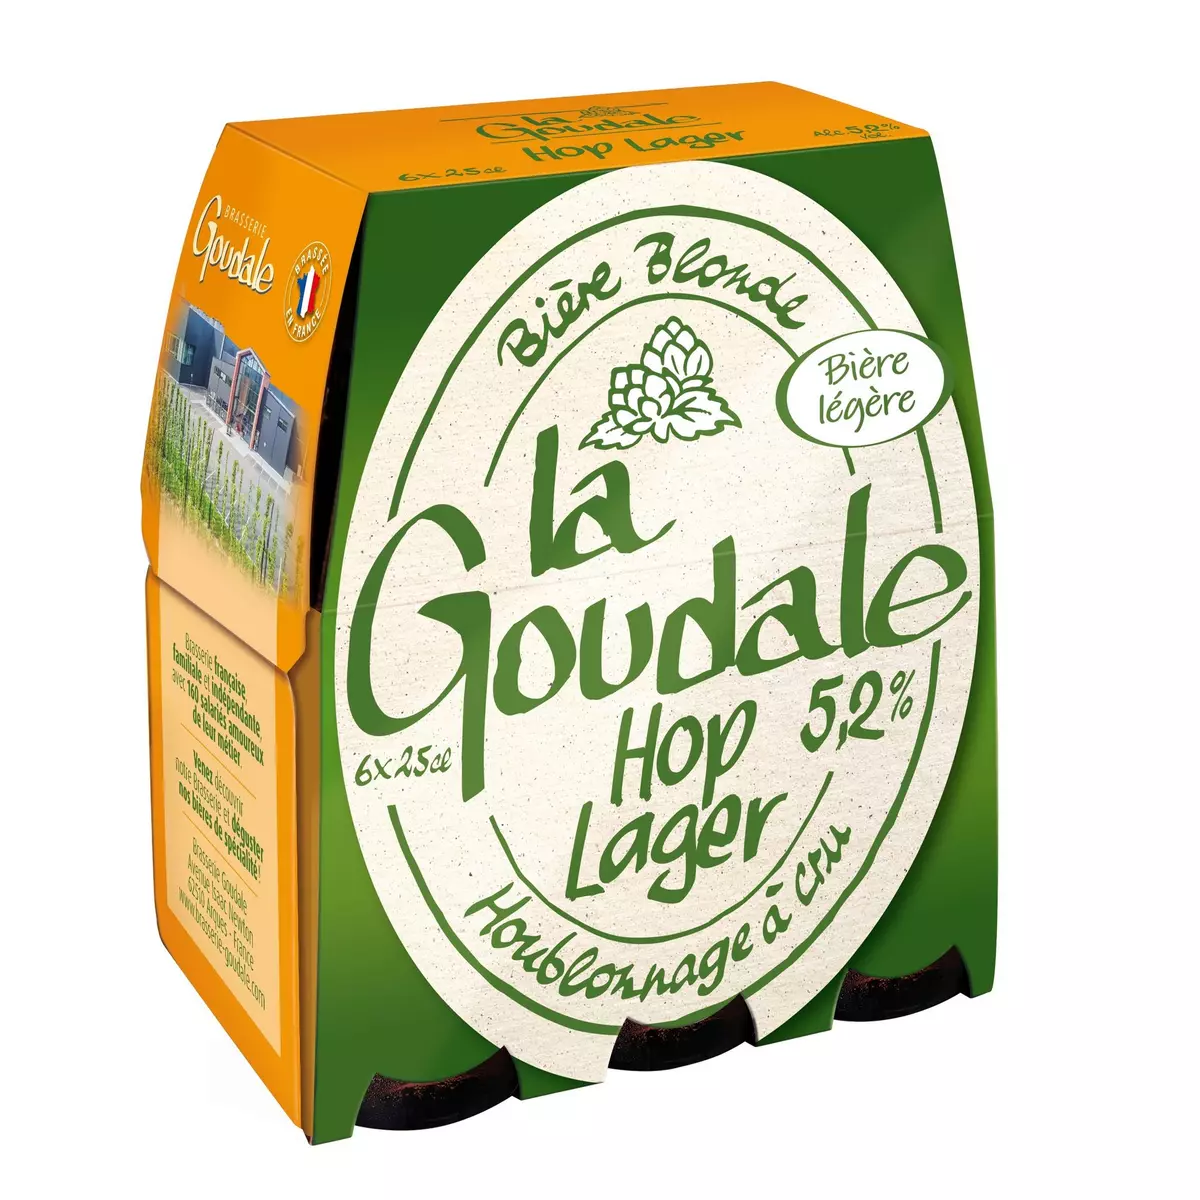 LA GOUDALE Hop ! Lager bière blonde 5.2% bouteilles 6x25cl